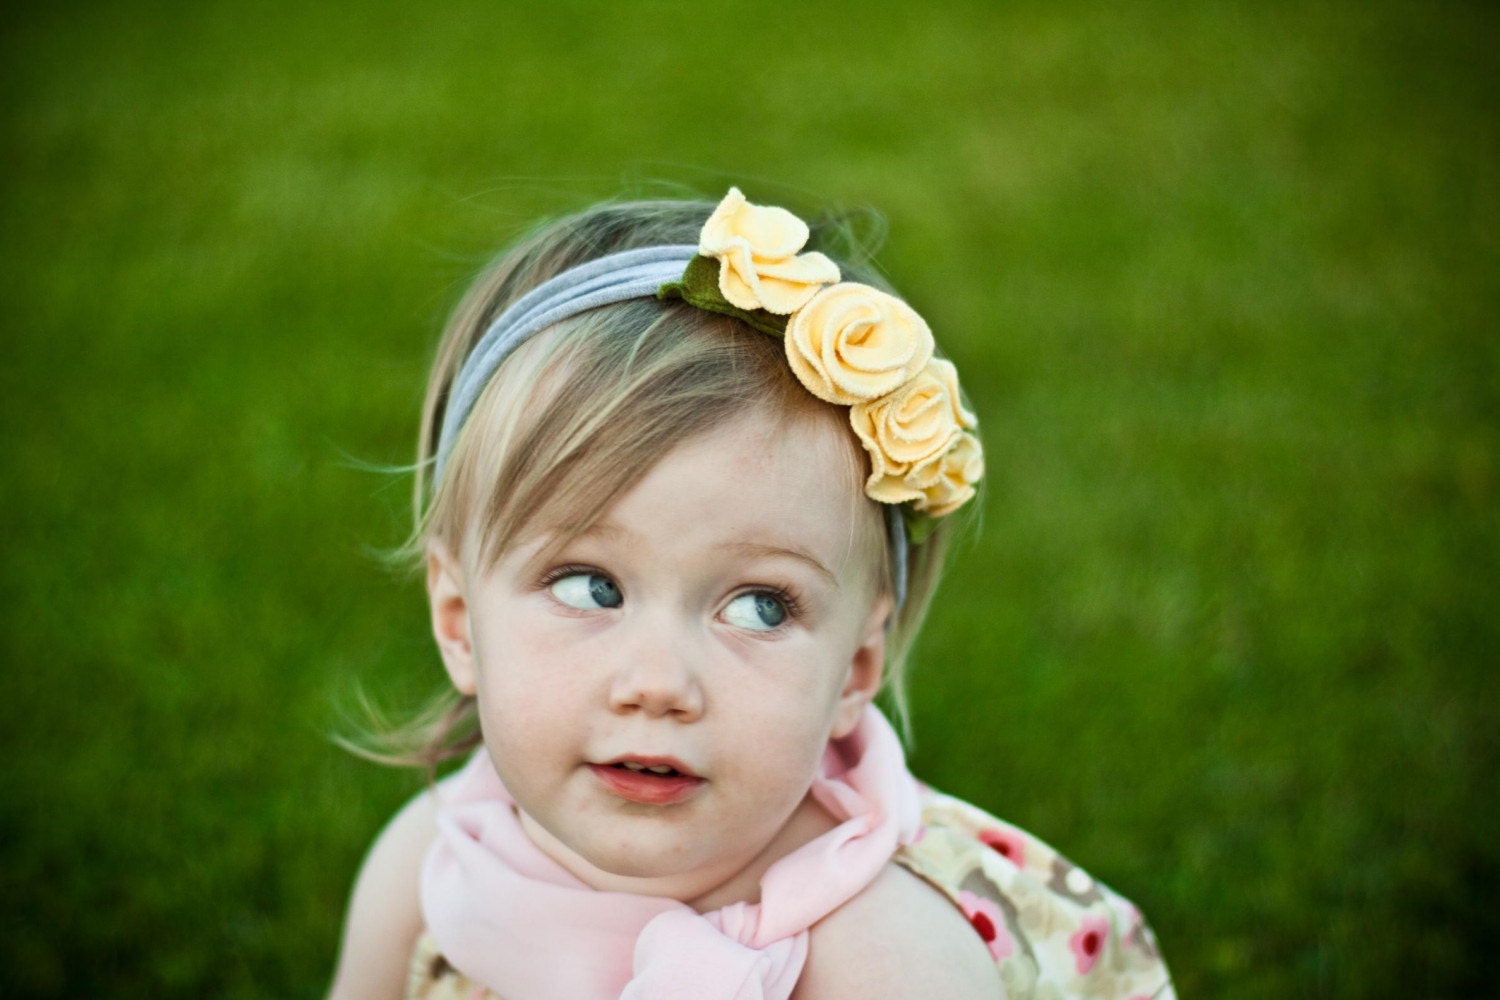 Лимонный крем snugars повязка волосы группа шляпу шапочка ребенок младенец малыш новорожденных девочек